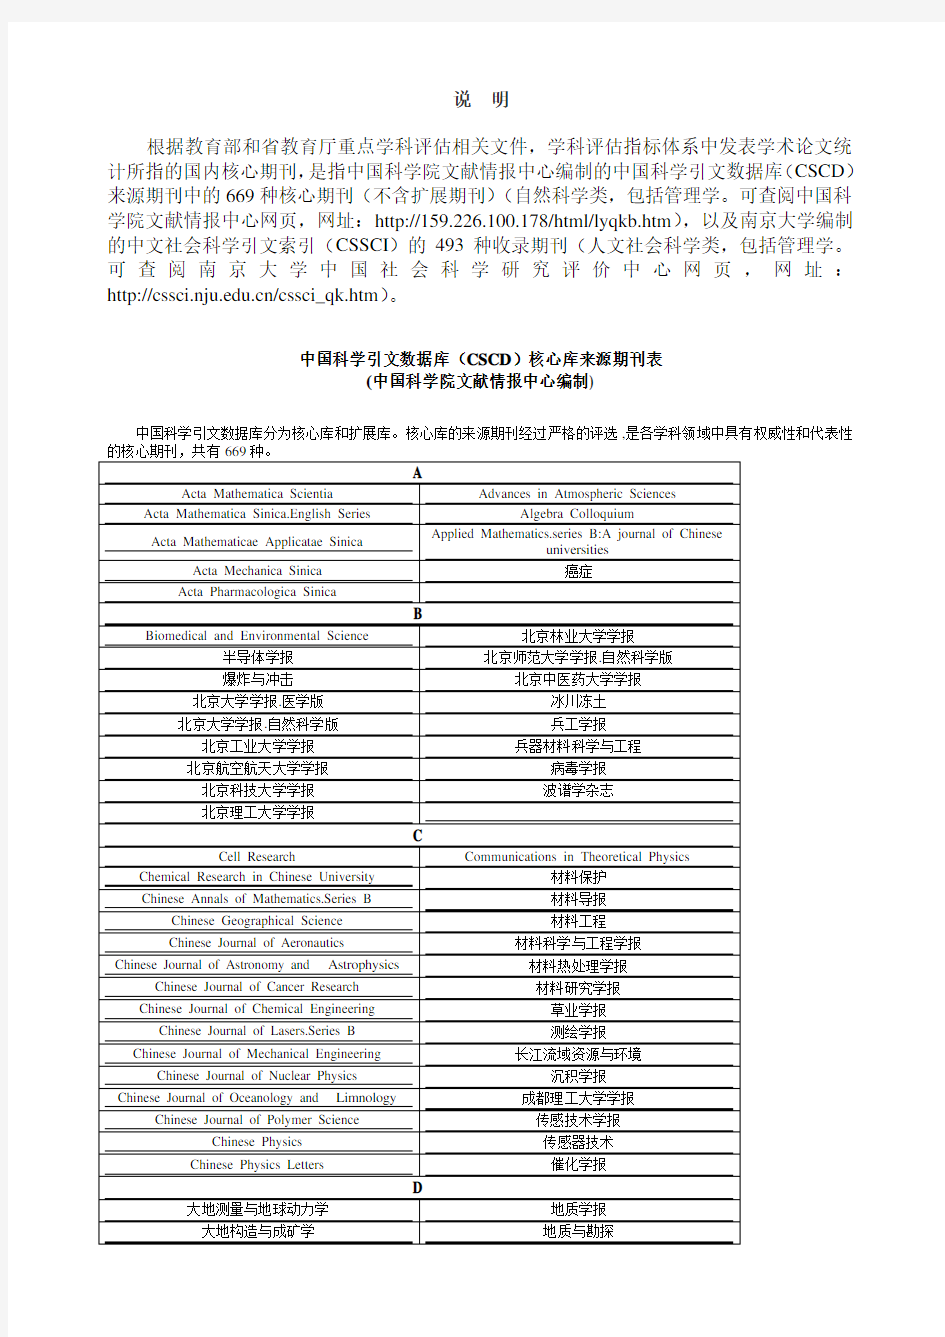 中国科学引文数据库(CSCD)核心库来源期刊表